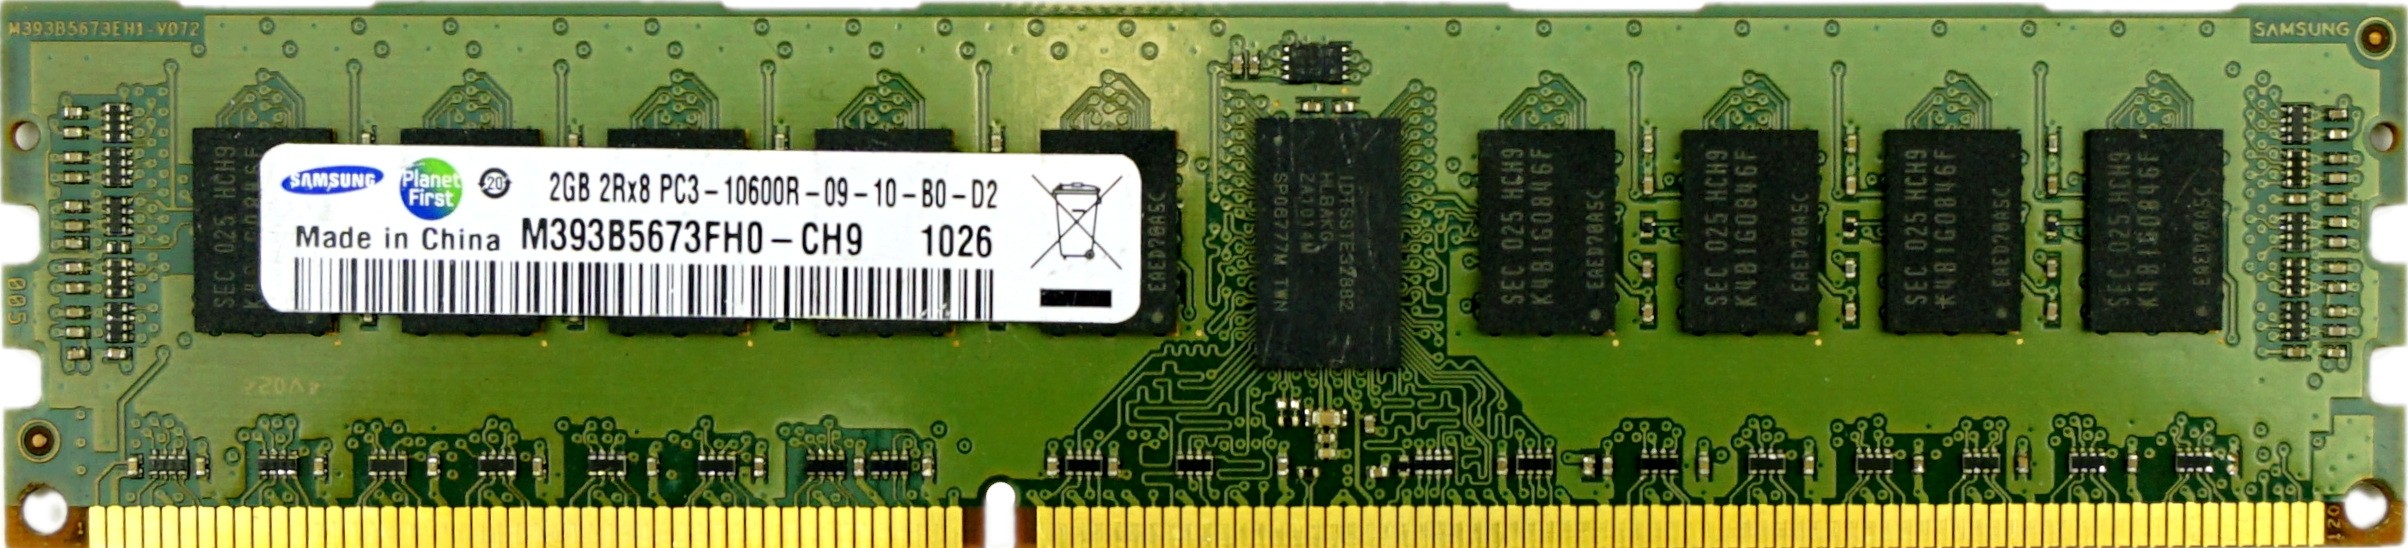 Samsung - 2GB PC3-10600R (DDR3-1333Mhz, 2RX8)